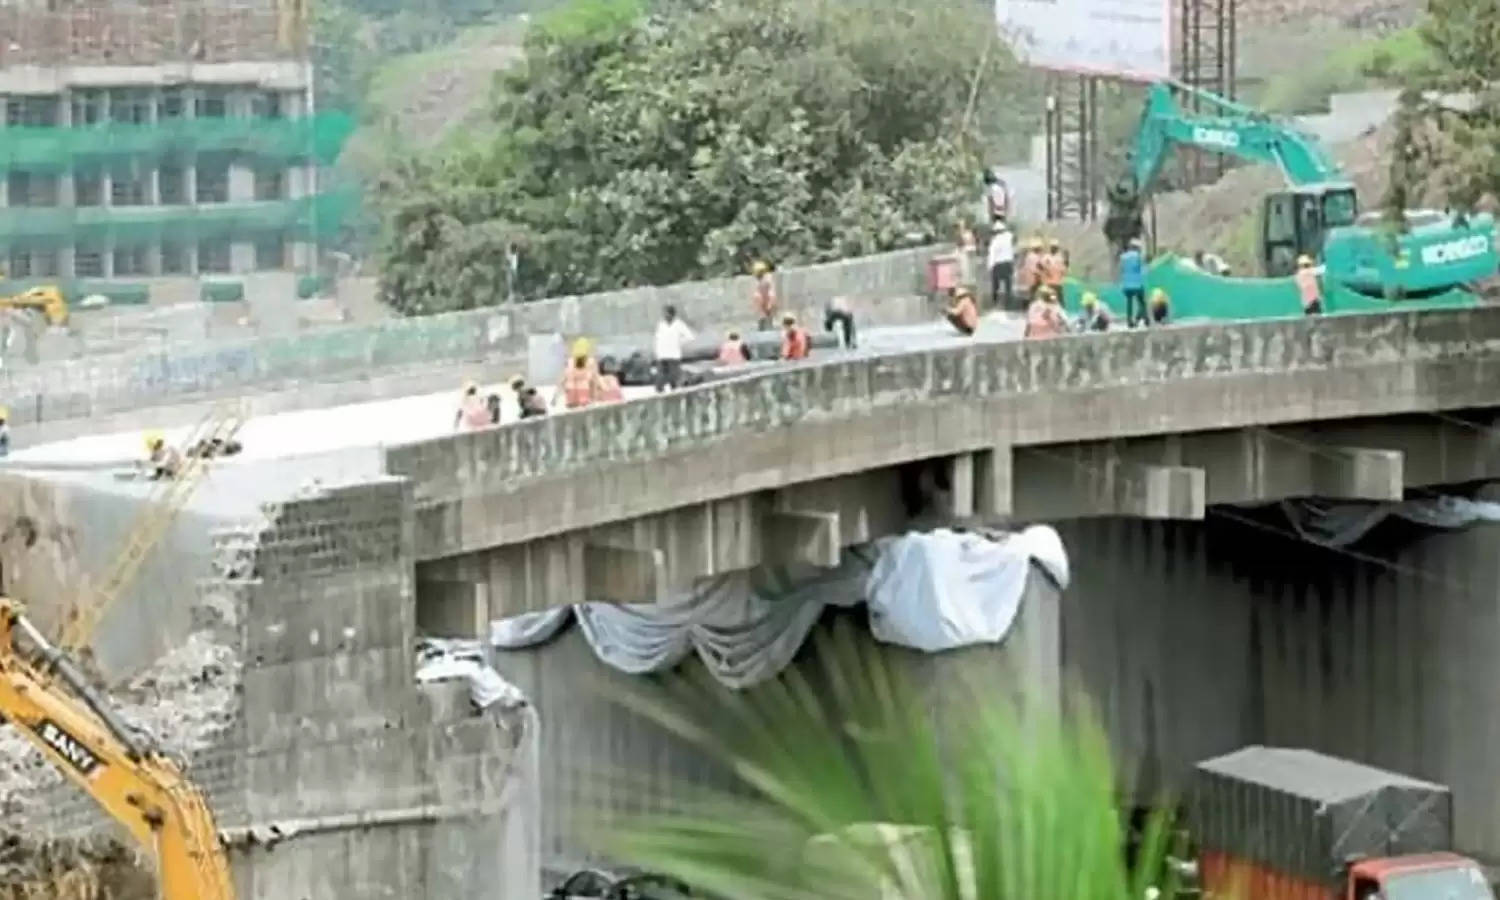 ट्विन टावर की तर्ज पर गिराया गया चांदनी चौक पुल, देखें धमाके का वीडियो